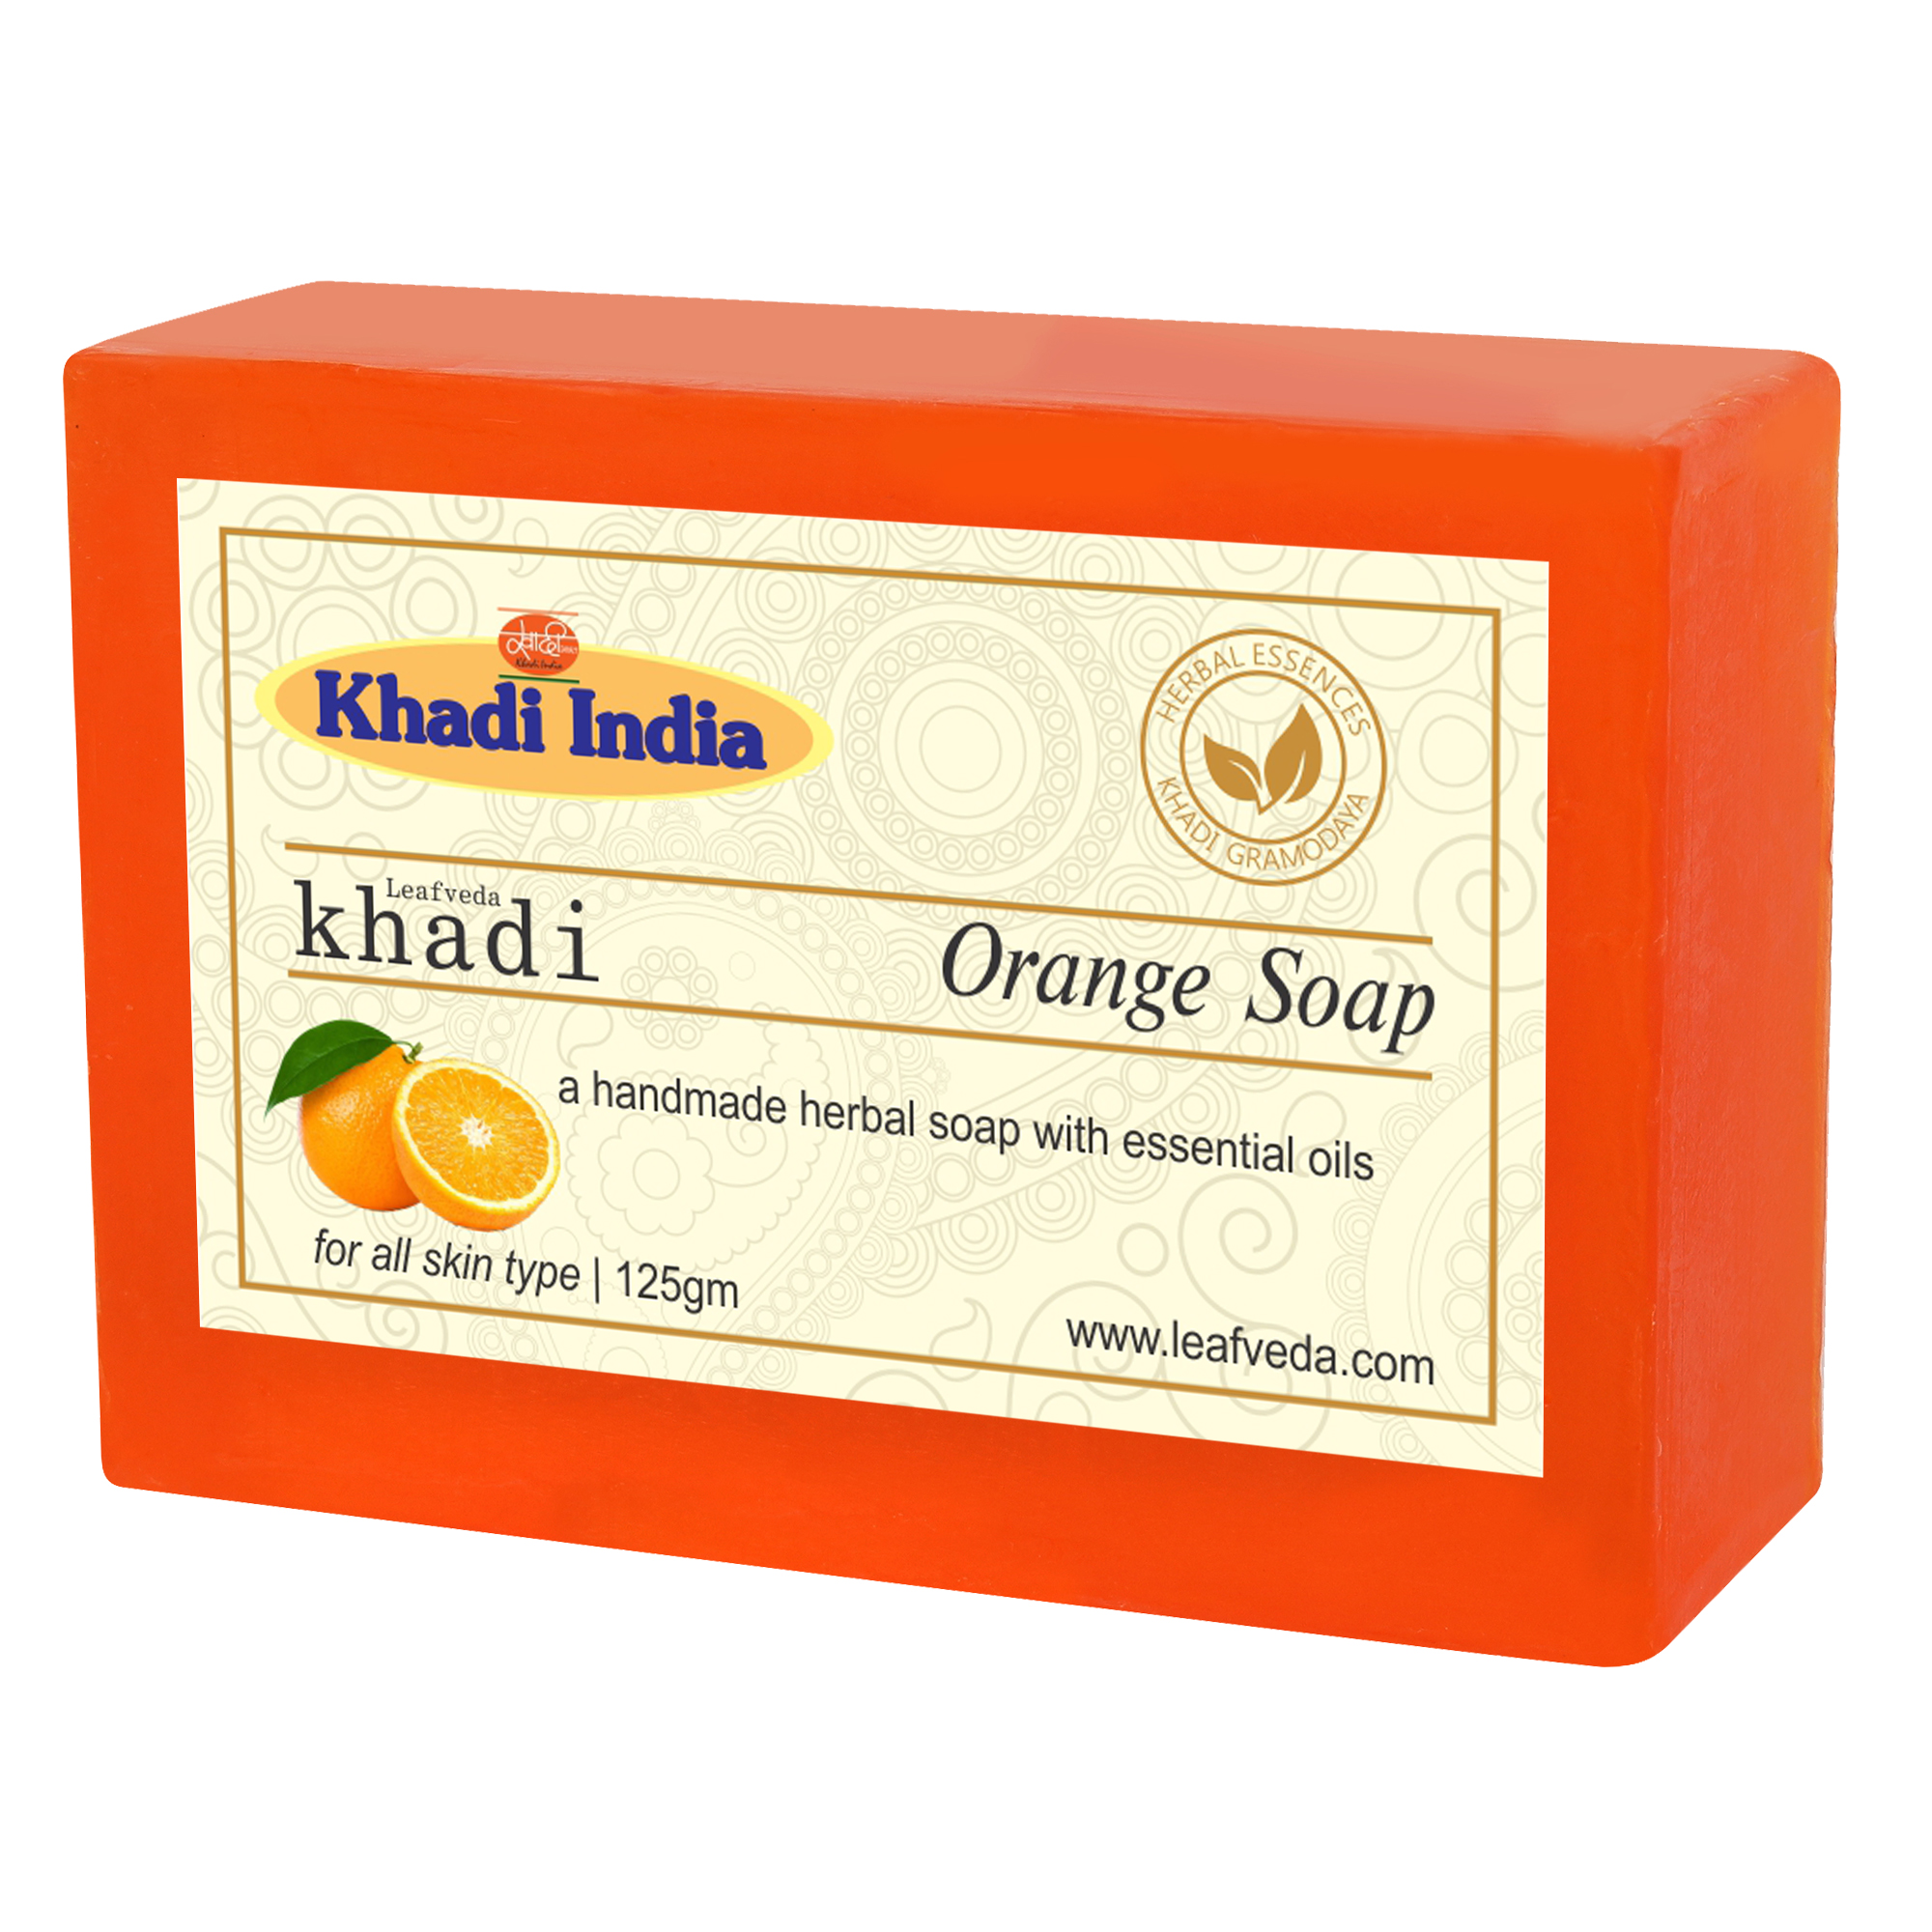 Buy Khadi Leafveda Orange Soap at Best Price Online